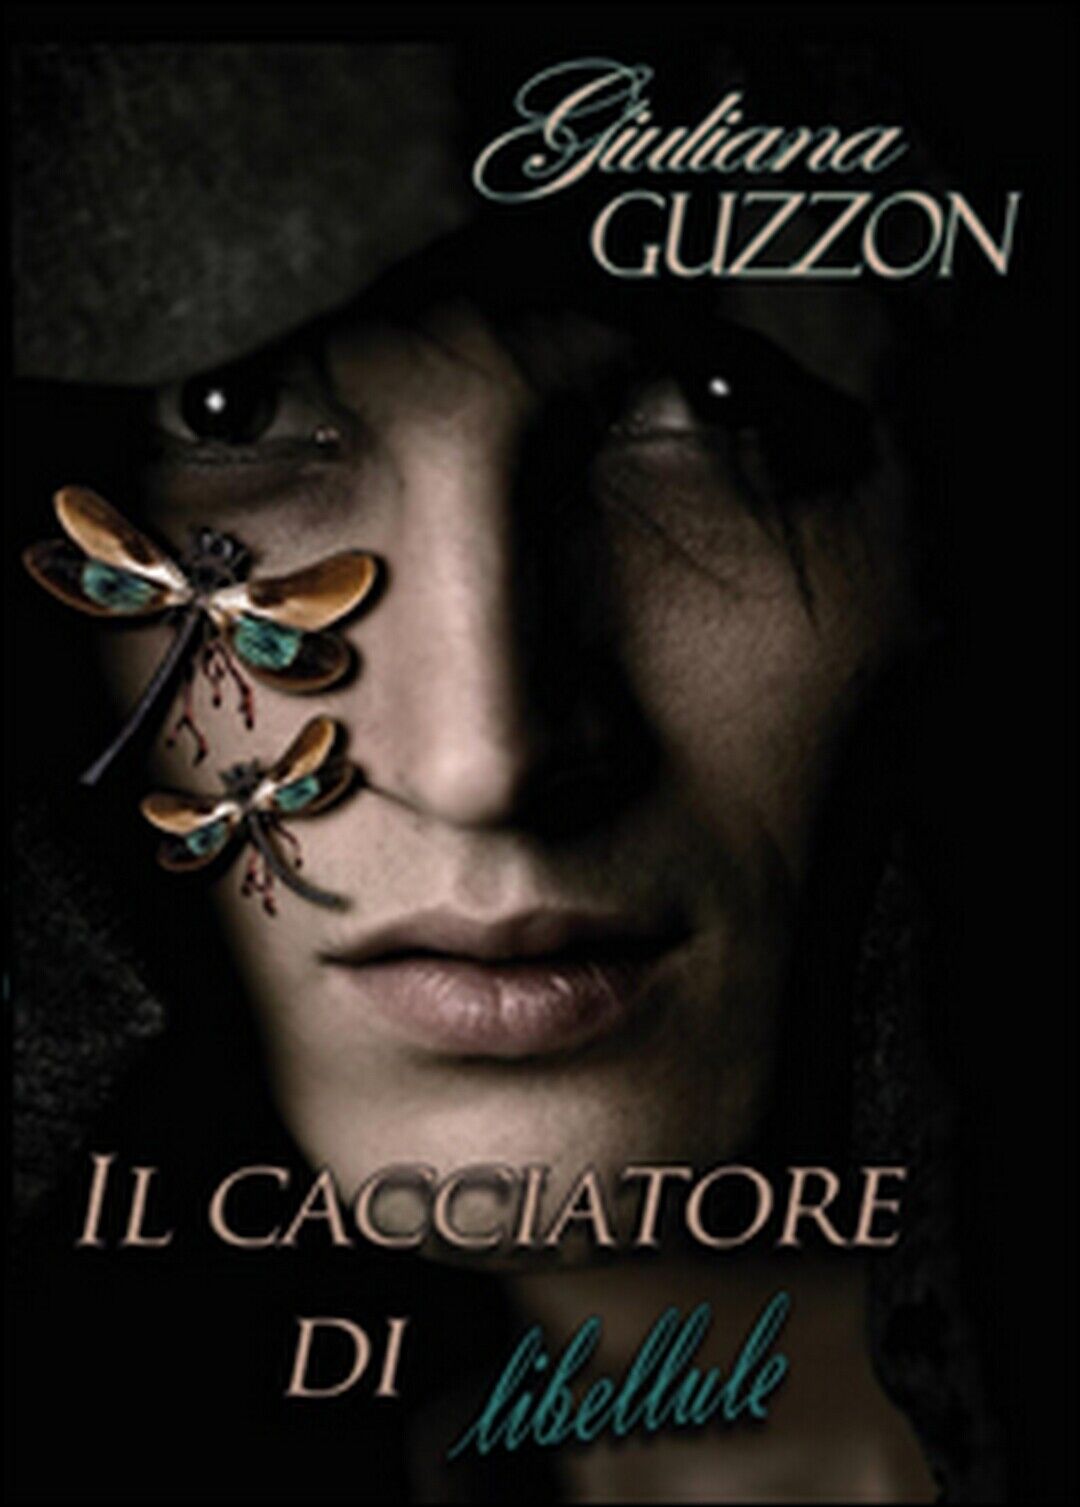 Il cacciatore di libellule  di Giuliana Guzzon,  2015,  Youcanprint